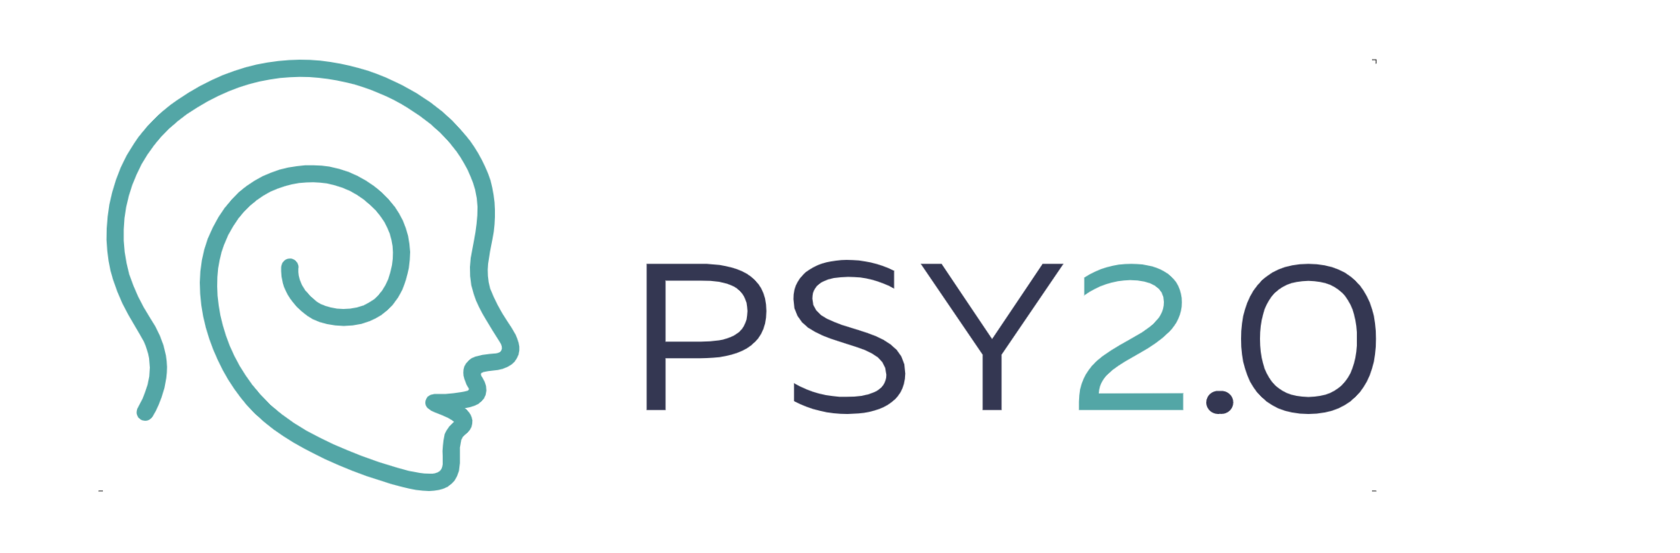 Сайт 0 12. Пси 2.0. Psy2.0 школа психосоматики. Лого пси 2:0. Психосоматика пси 2.0.